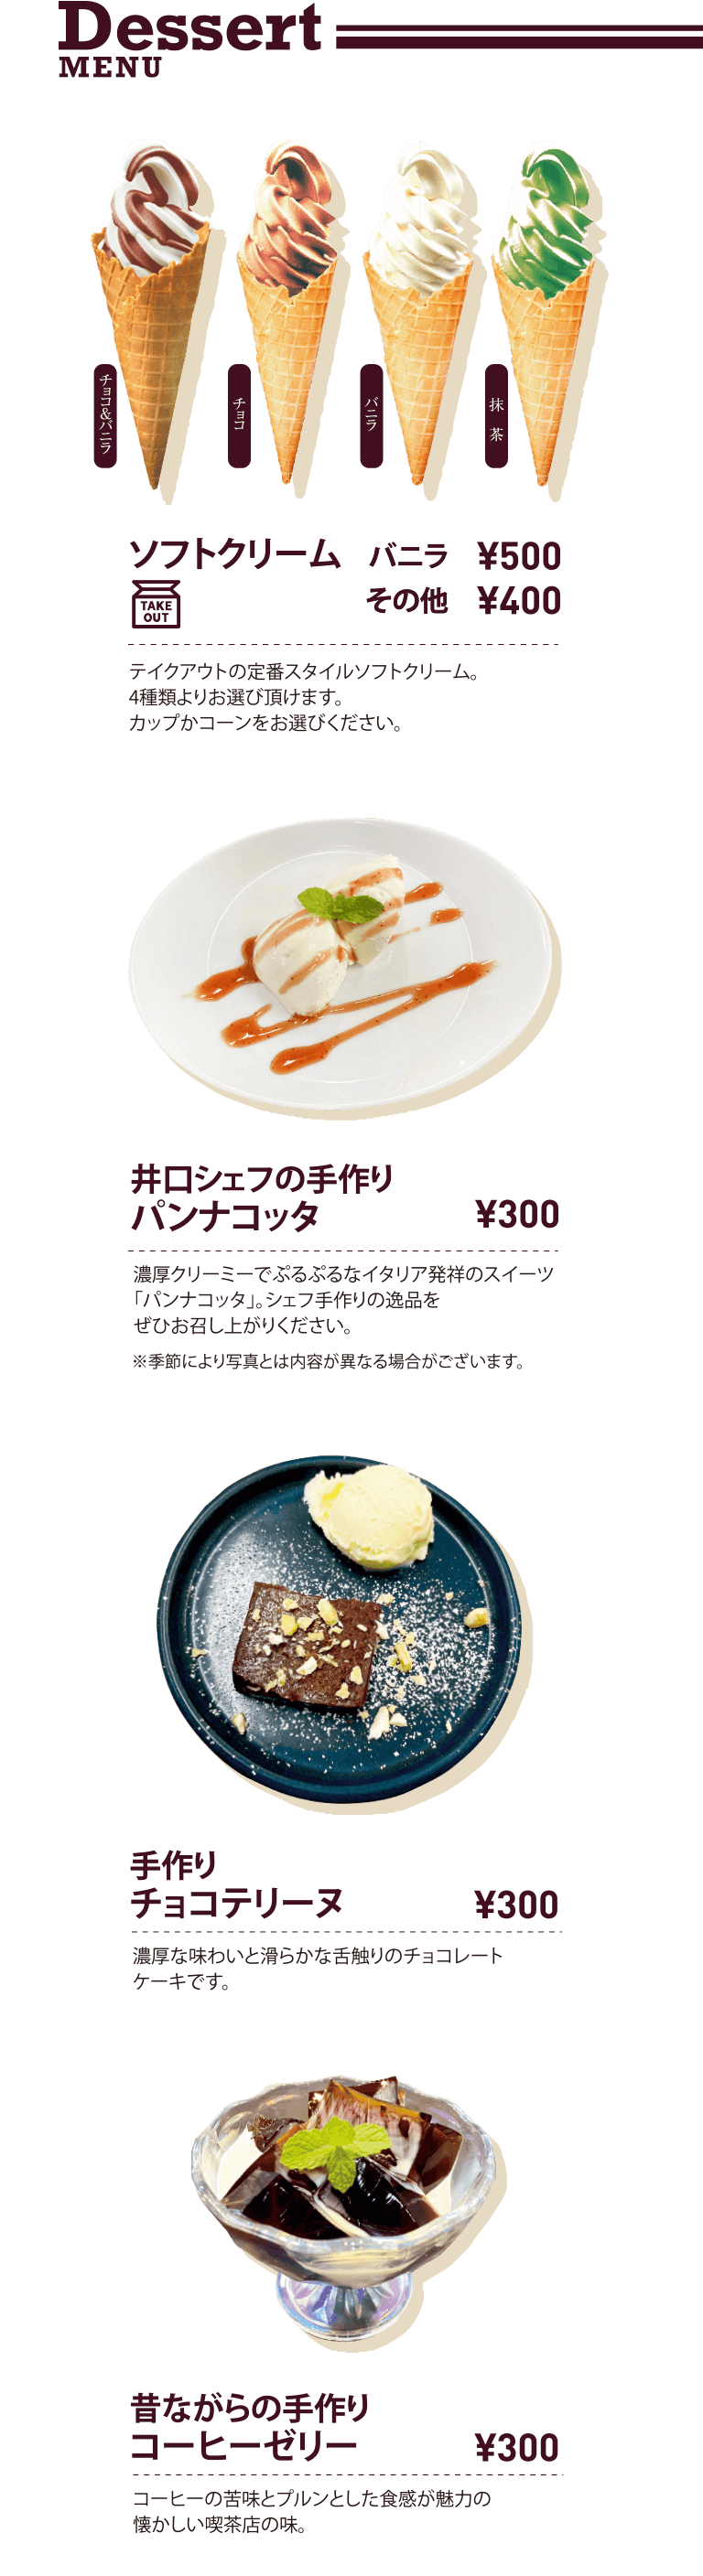 Dessert MENU フレンチトースト ソフトクリーム 井口シェフの手作りパンナコッタ